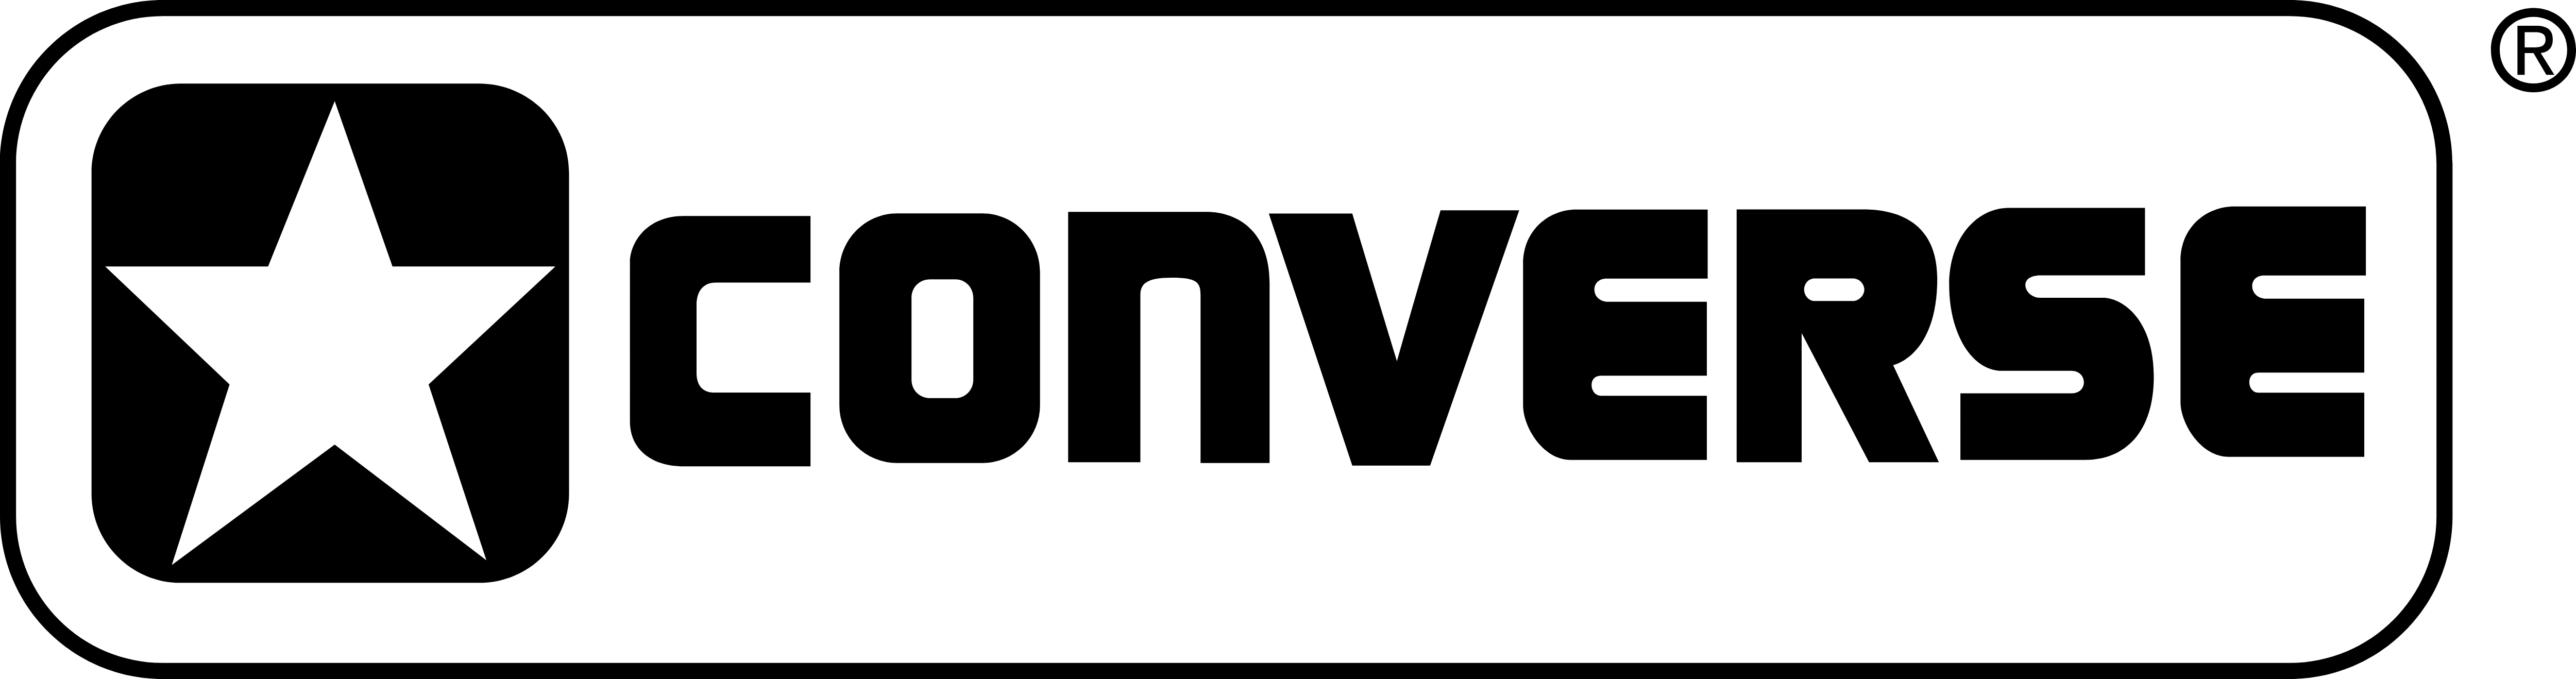 Logo percakapan